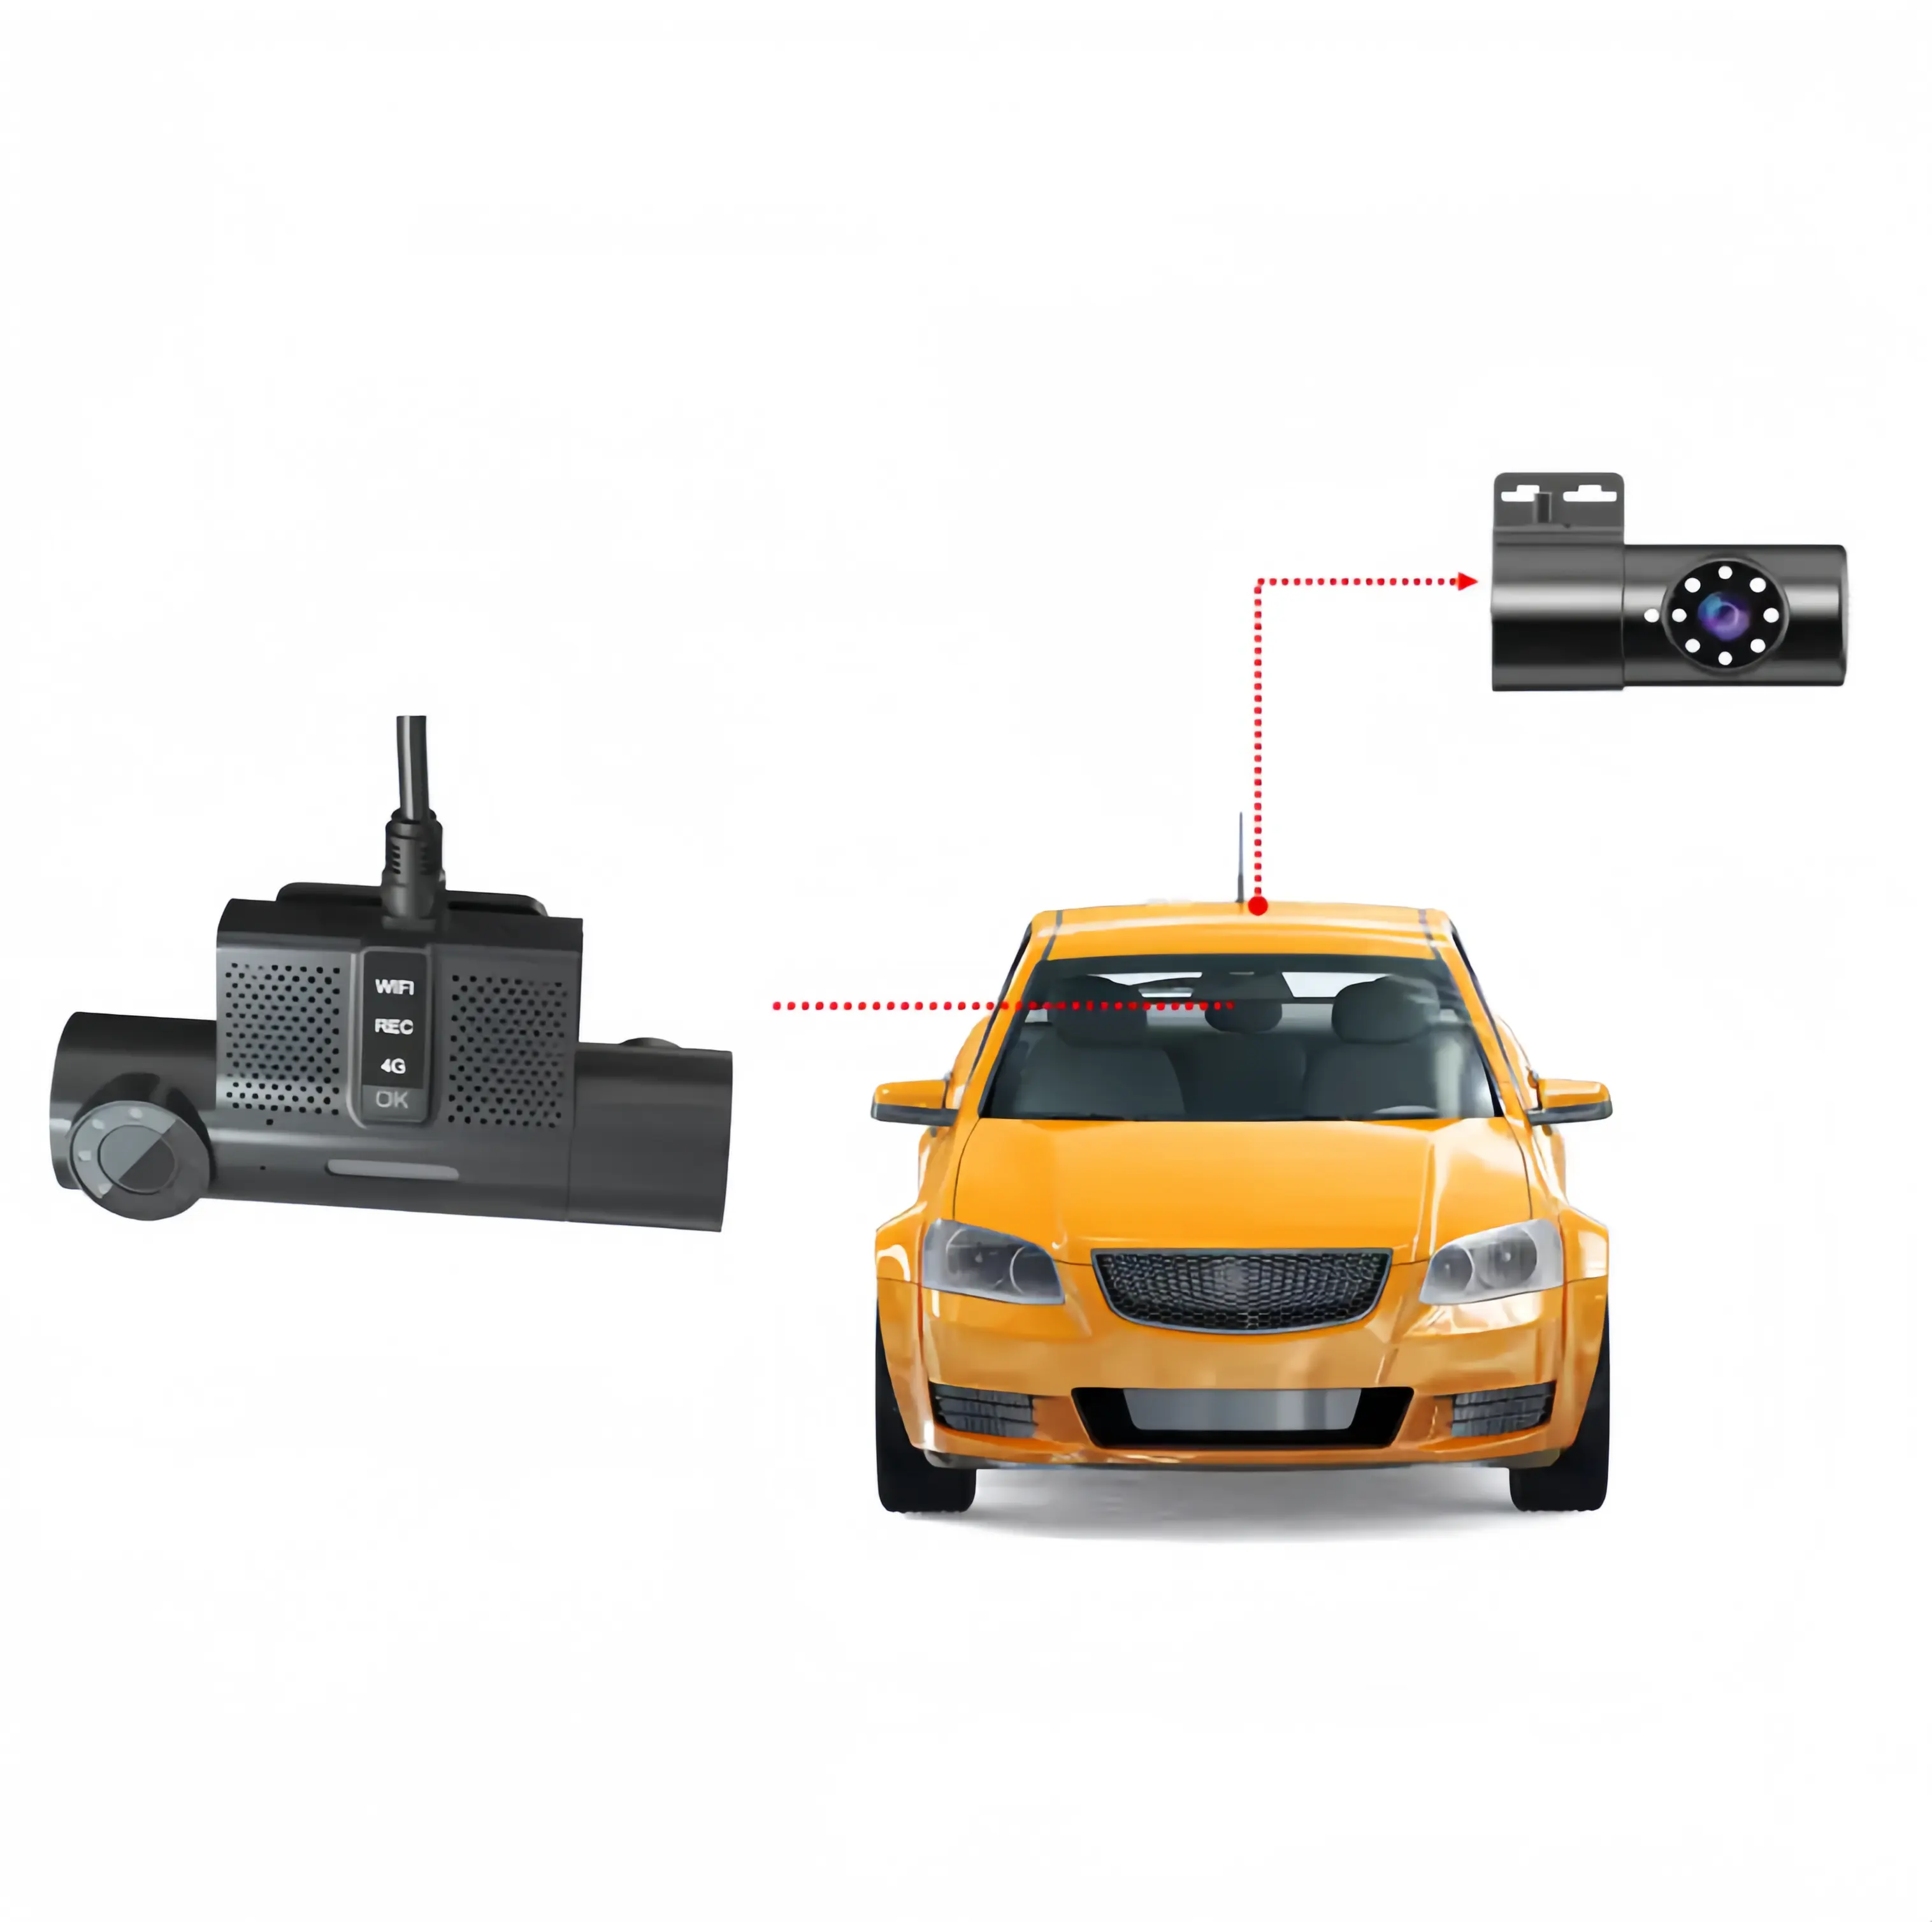 4g wifi düello lens dashcam mini boyutu destek harici kamera 1080p video kaydedici uzaktan kumanda desteği araç platformu bağlamak